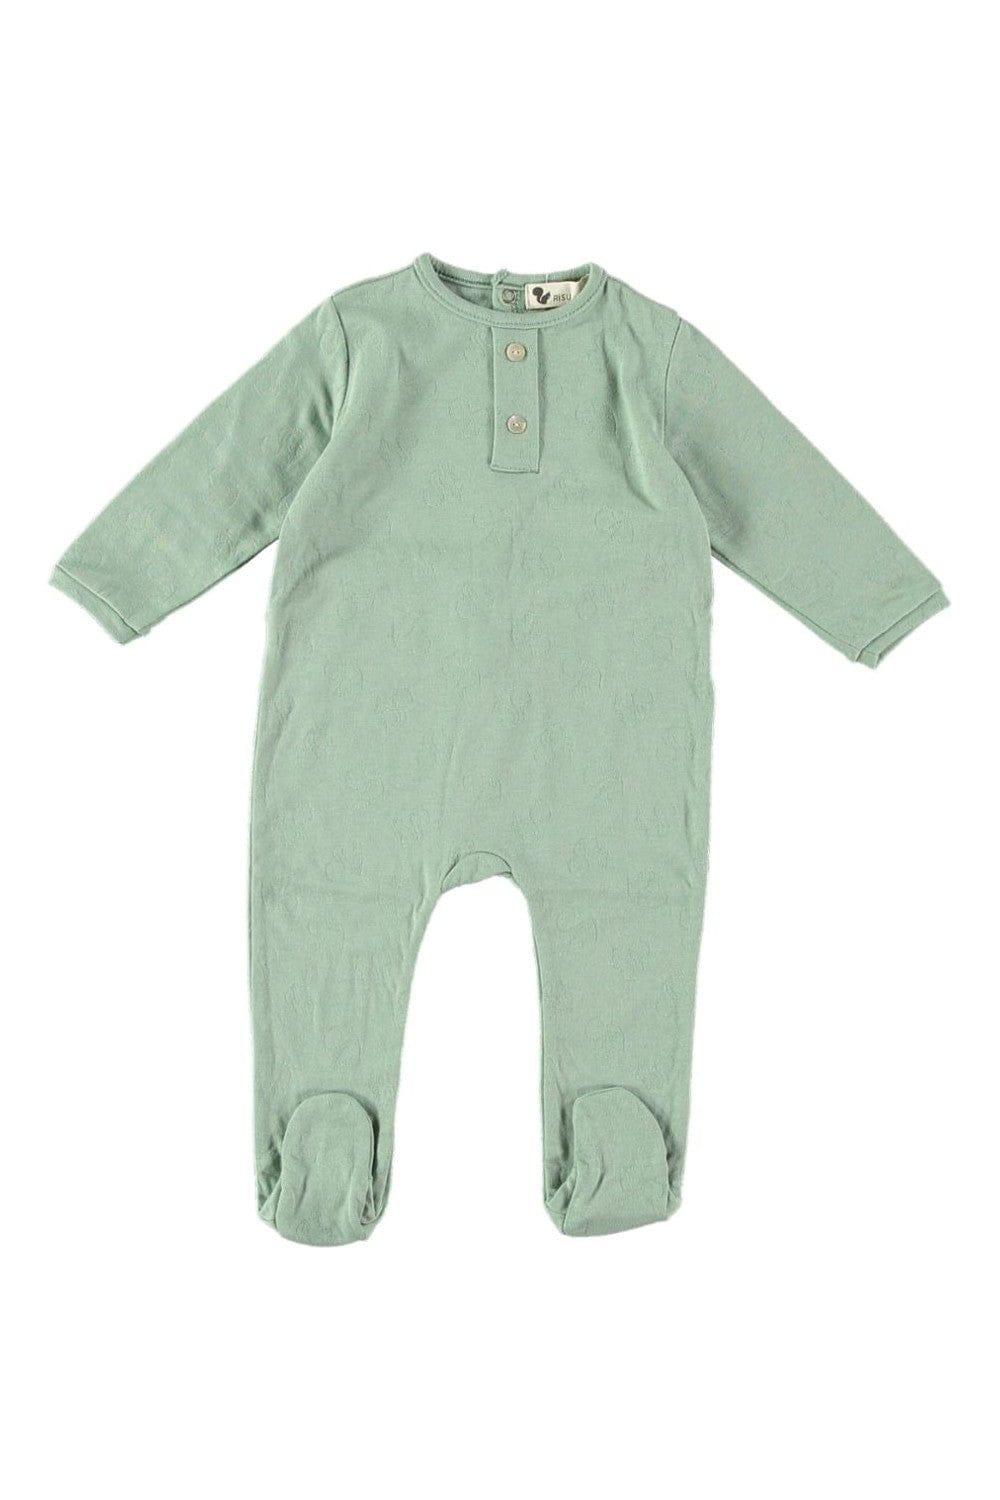 Risu Risu Clothing / PJs / Footed Sleepers 1M Domino Baby Pyjamas